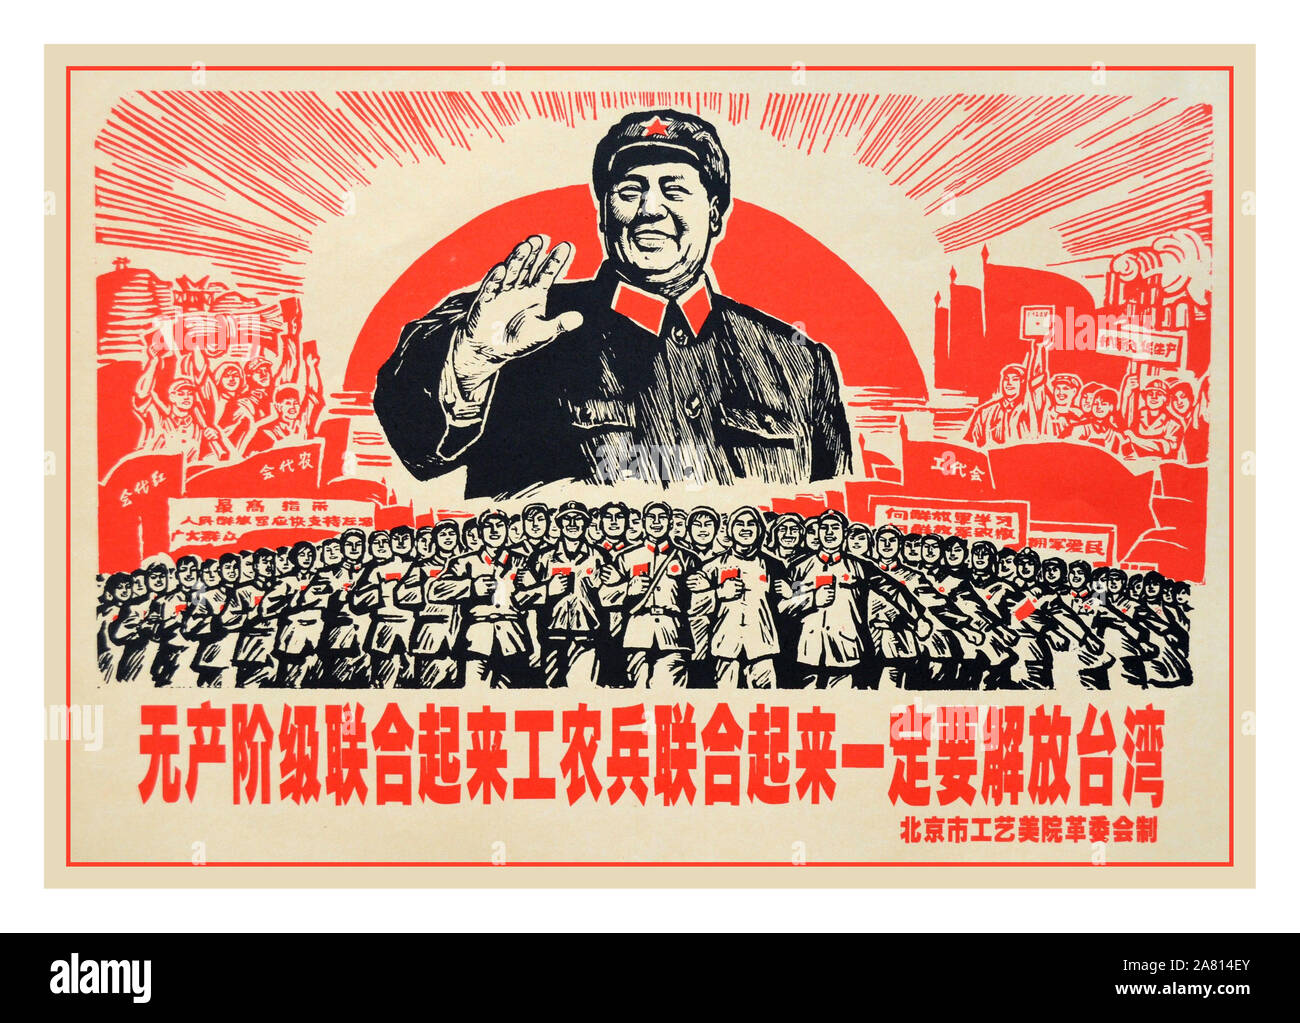 Vintage 1950 el Presidente Mao Póster de Propaganda de la República Popular de China (PRC),Revolución Cultural China Cultura Historia Vintage carteles carteles de propaganda comunista ilustraciones Foto de stock